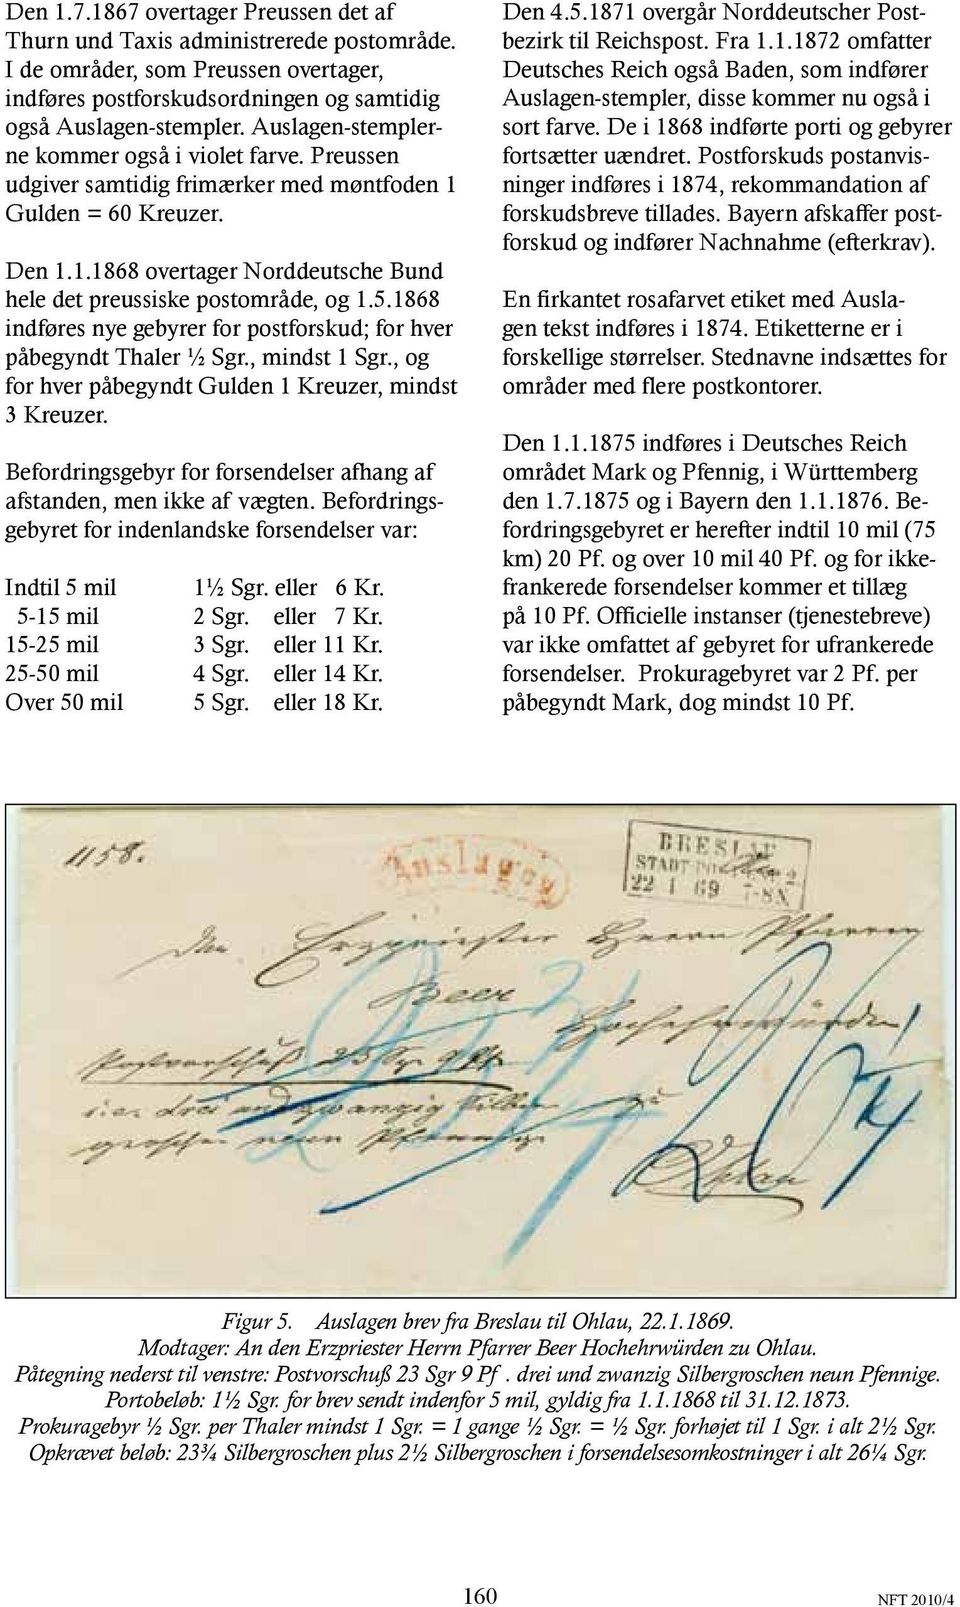 5.1868 indføres nye gebyrer for postforskud; for hver påbegyndt Thaler ½ Sgr., mindst 1 Sgr., og for hver påbegyndt Gulden 1 Kreuzer, mindst 3 Kreuzer.